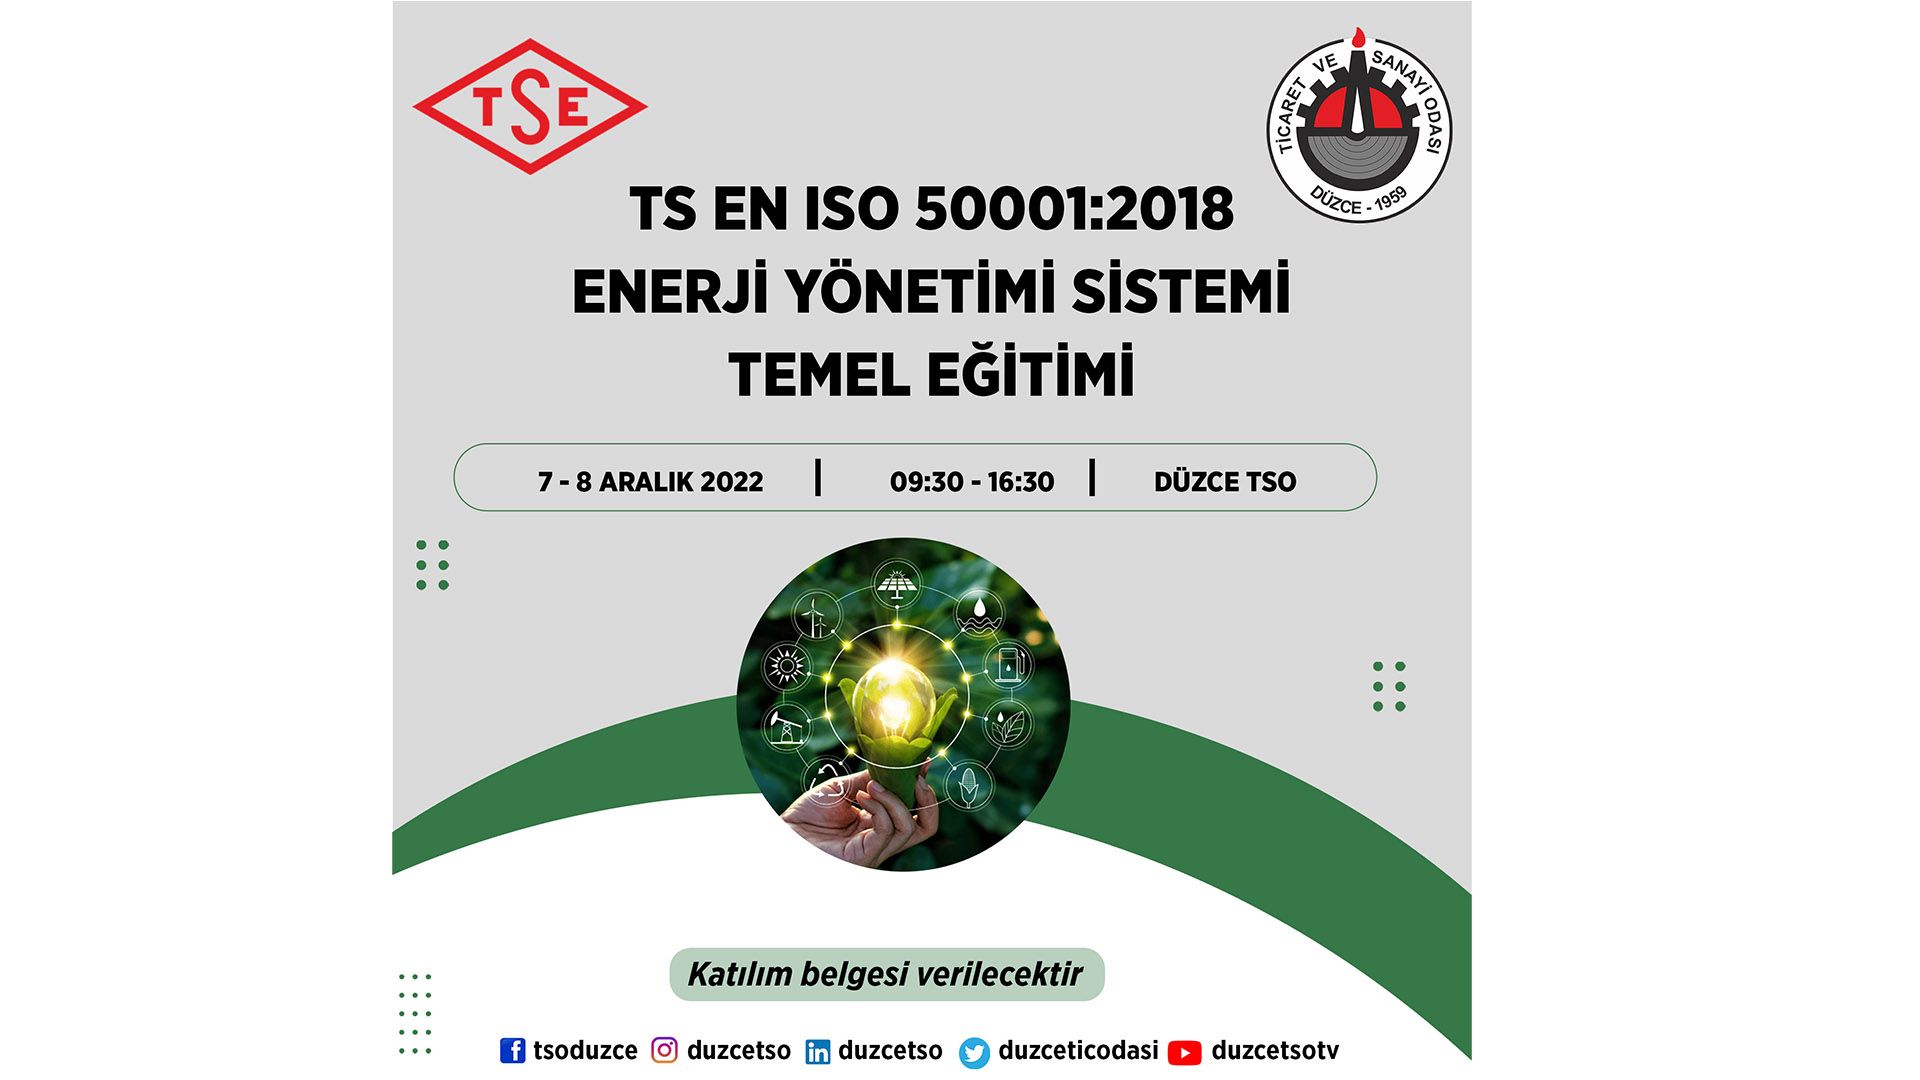 TS EN ISO 50001:2018 Enerji Yönetimi Sistemi Temel Eğitimi 